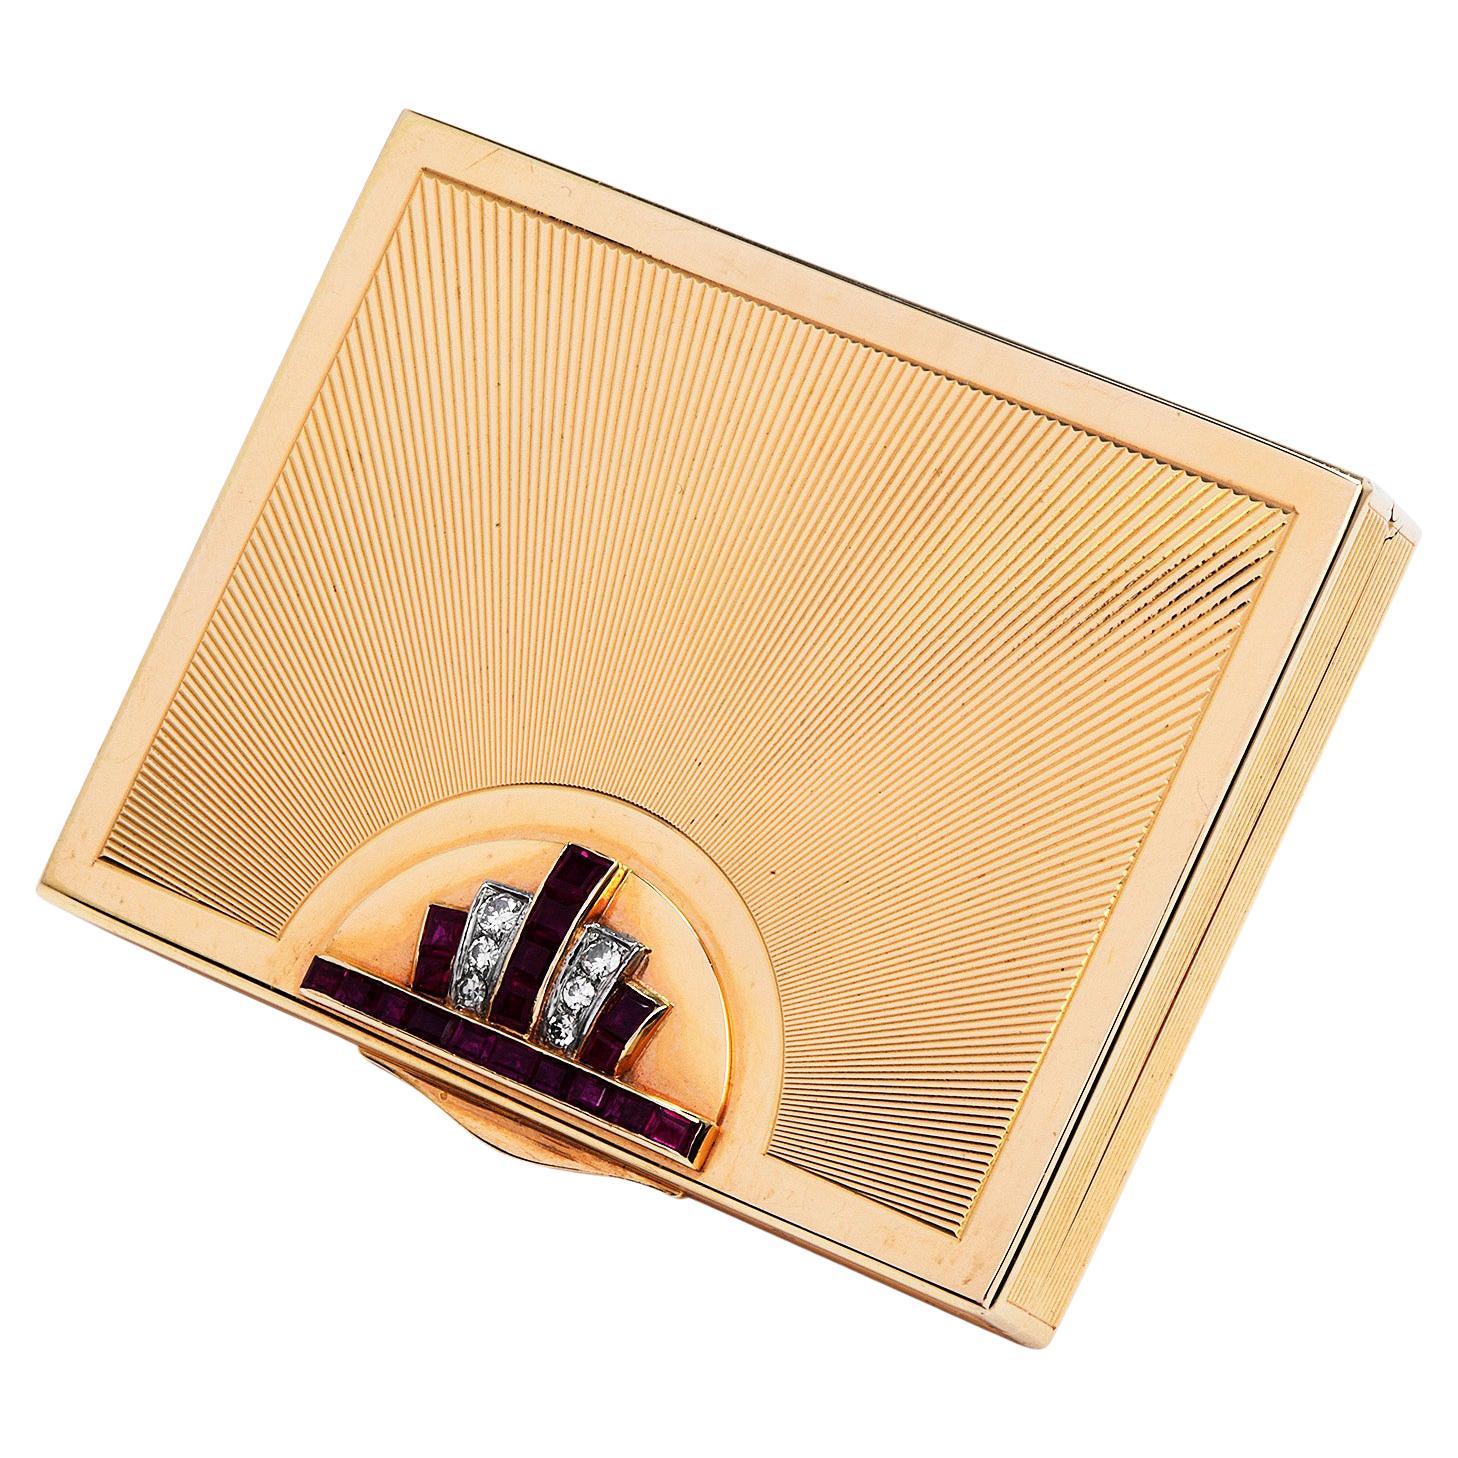 Diese authentische, kompakte Retro-Box aus 14k Gold hat ein strukturiertes Design mit Rubinen und Diamanten.
 Er ist aus massivem 14K Gelbgold gefertigt, wiegt 89,1 Gramm und misst 2 3/4